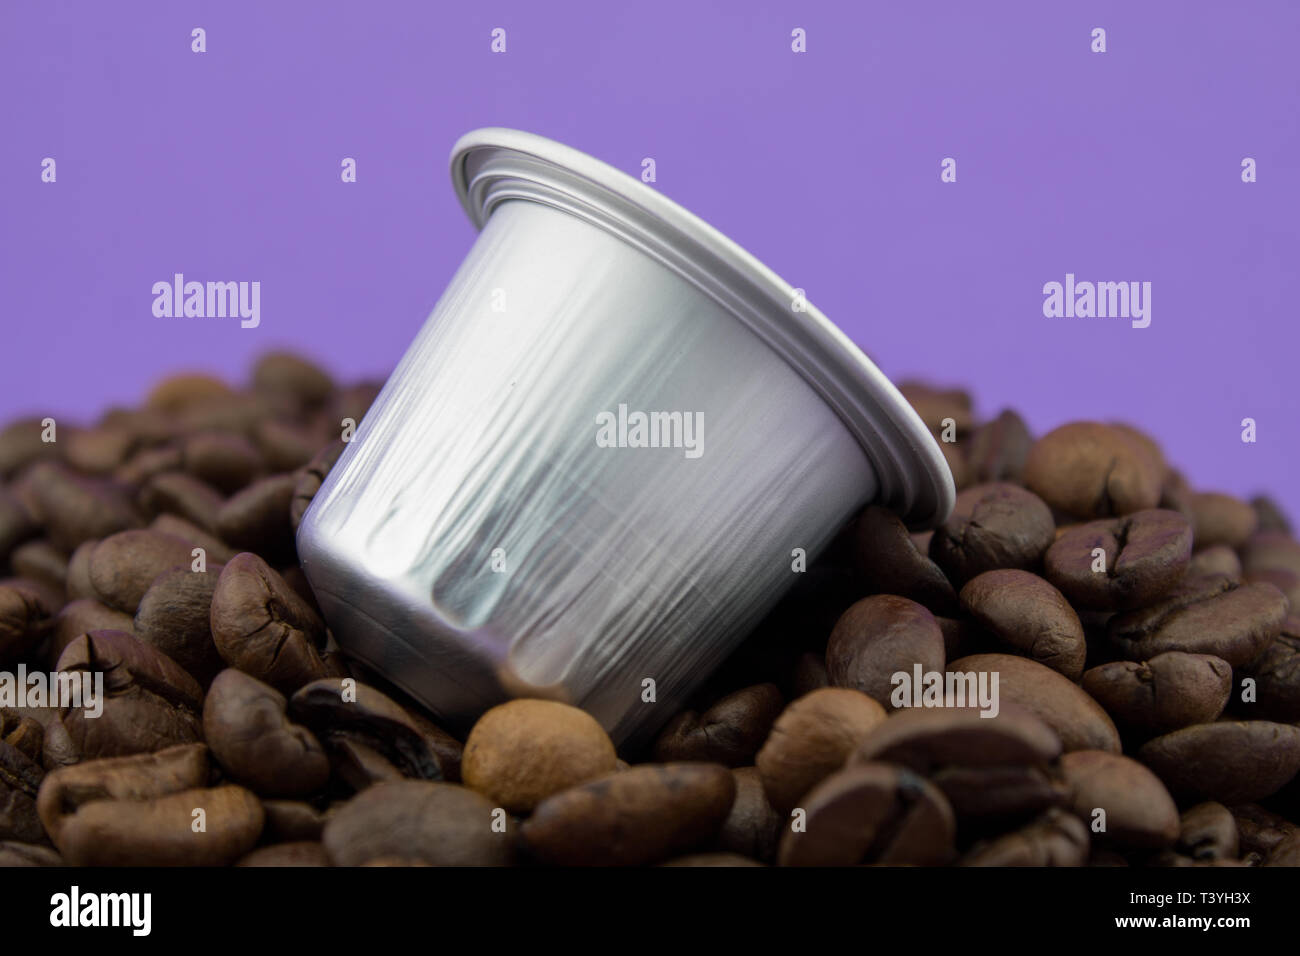 Espresso Kapsel oder kaffeepad auf Kaffeebohnen, violetten Hintergrund. Kapseln für die Kaffeemaschine. Stockfoto